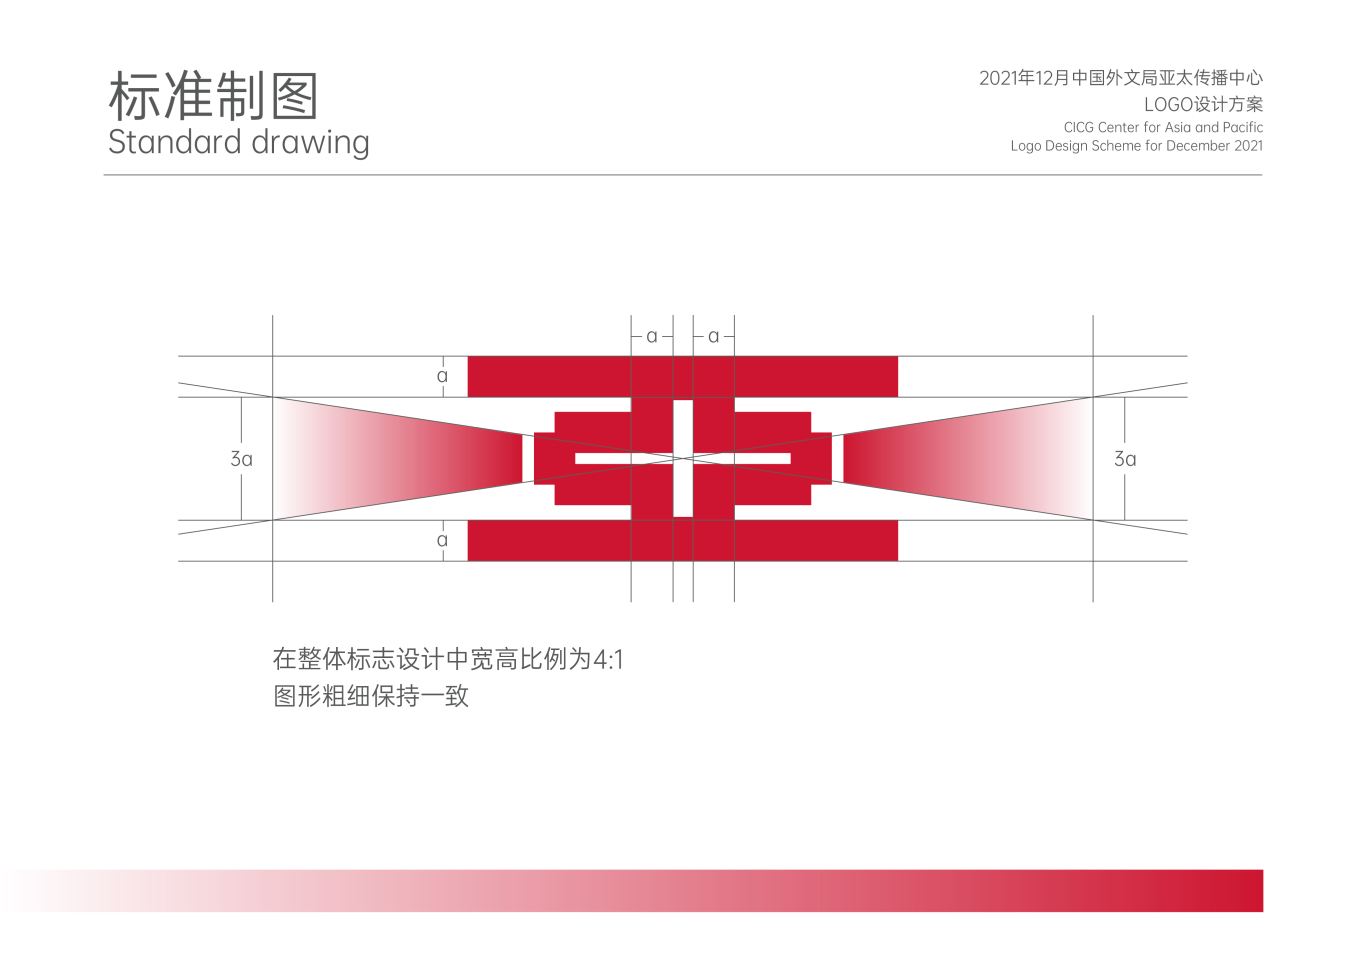 中国外文局亚太传播中心LOGO设计方案图1